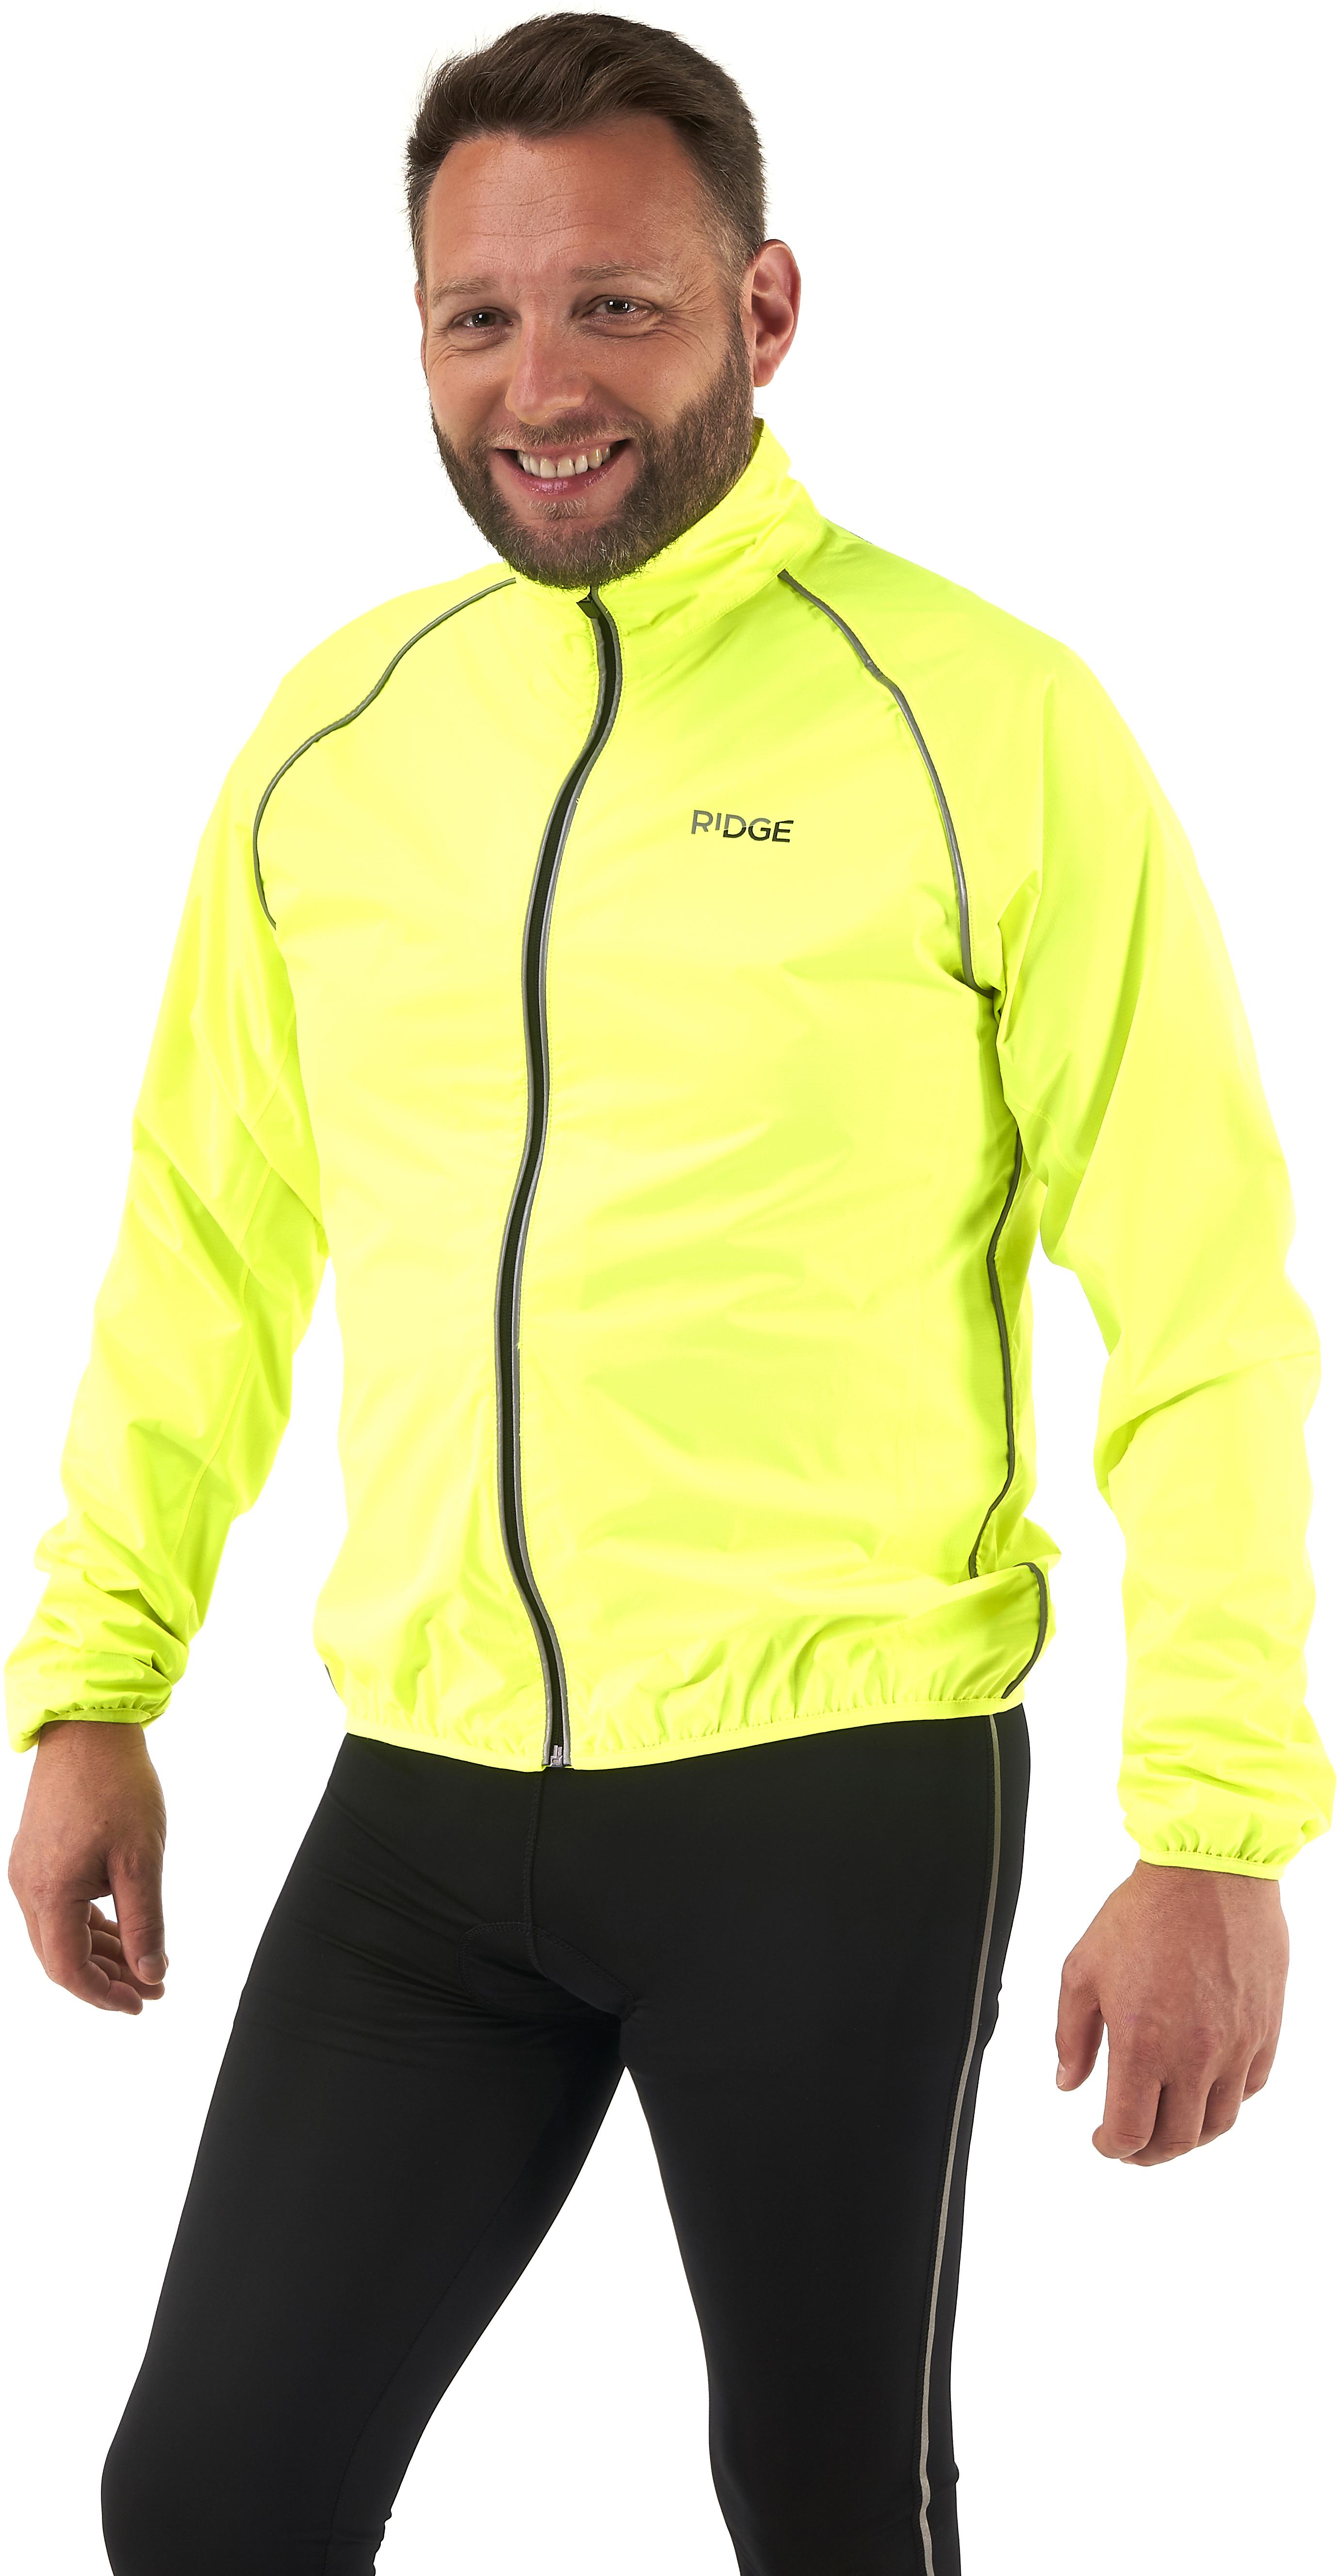 Ridge Unisex Fluoro Jacket - Yellow - Small